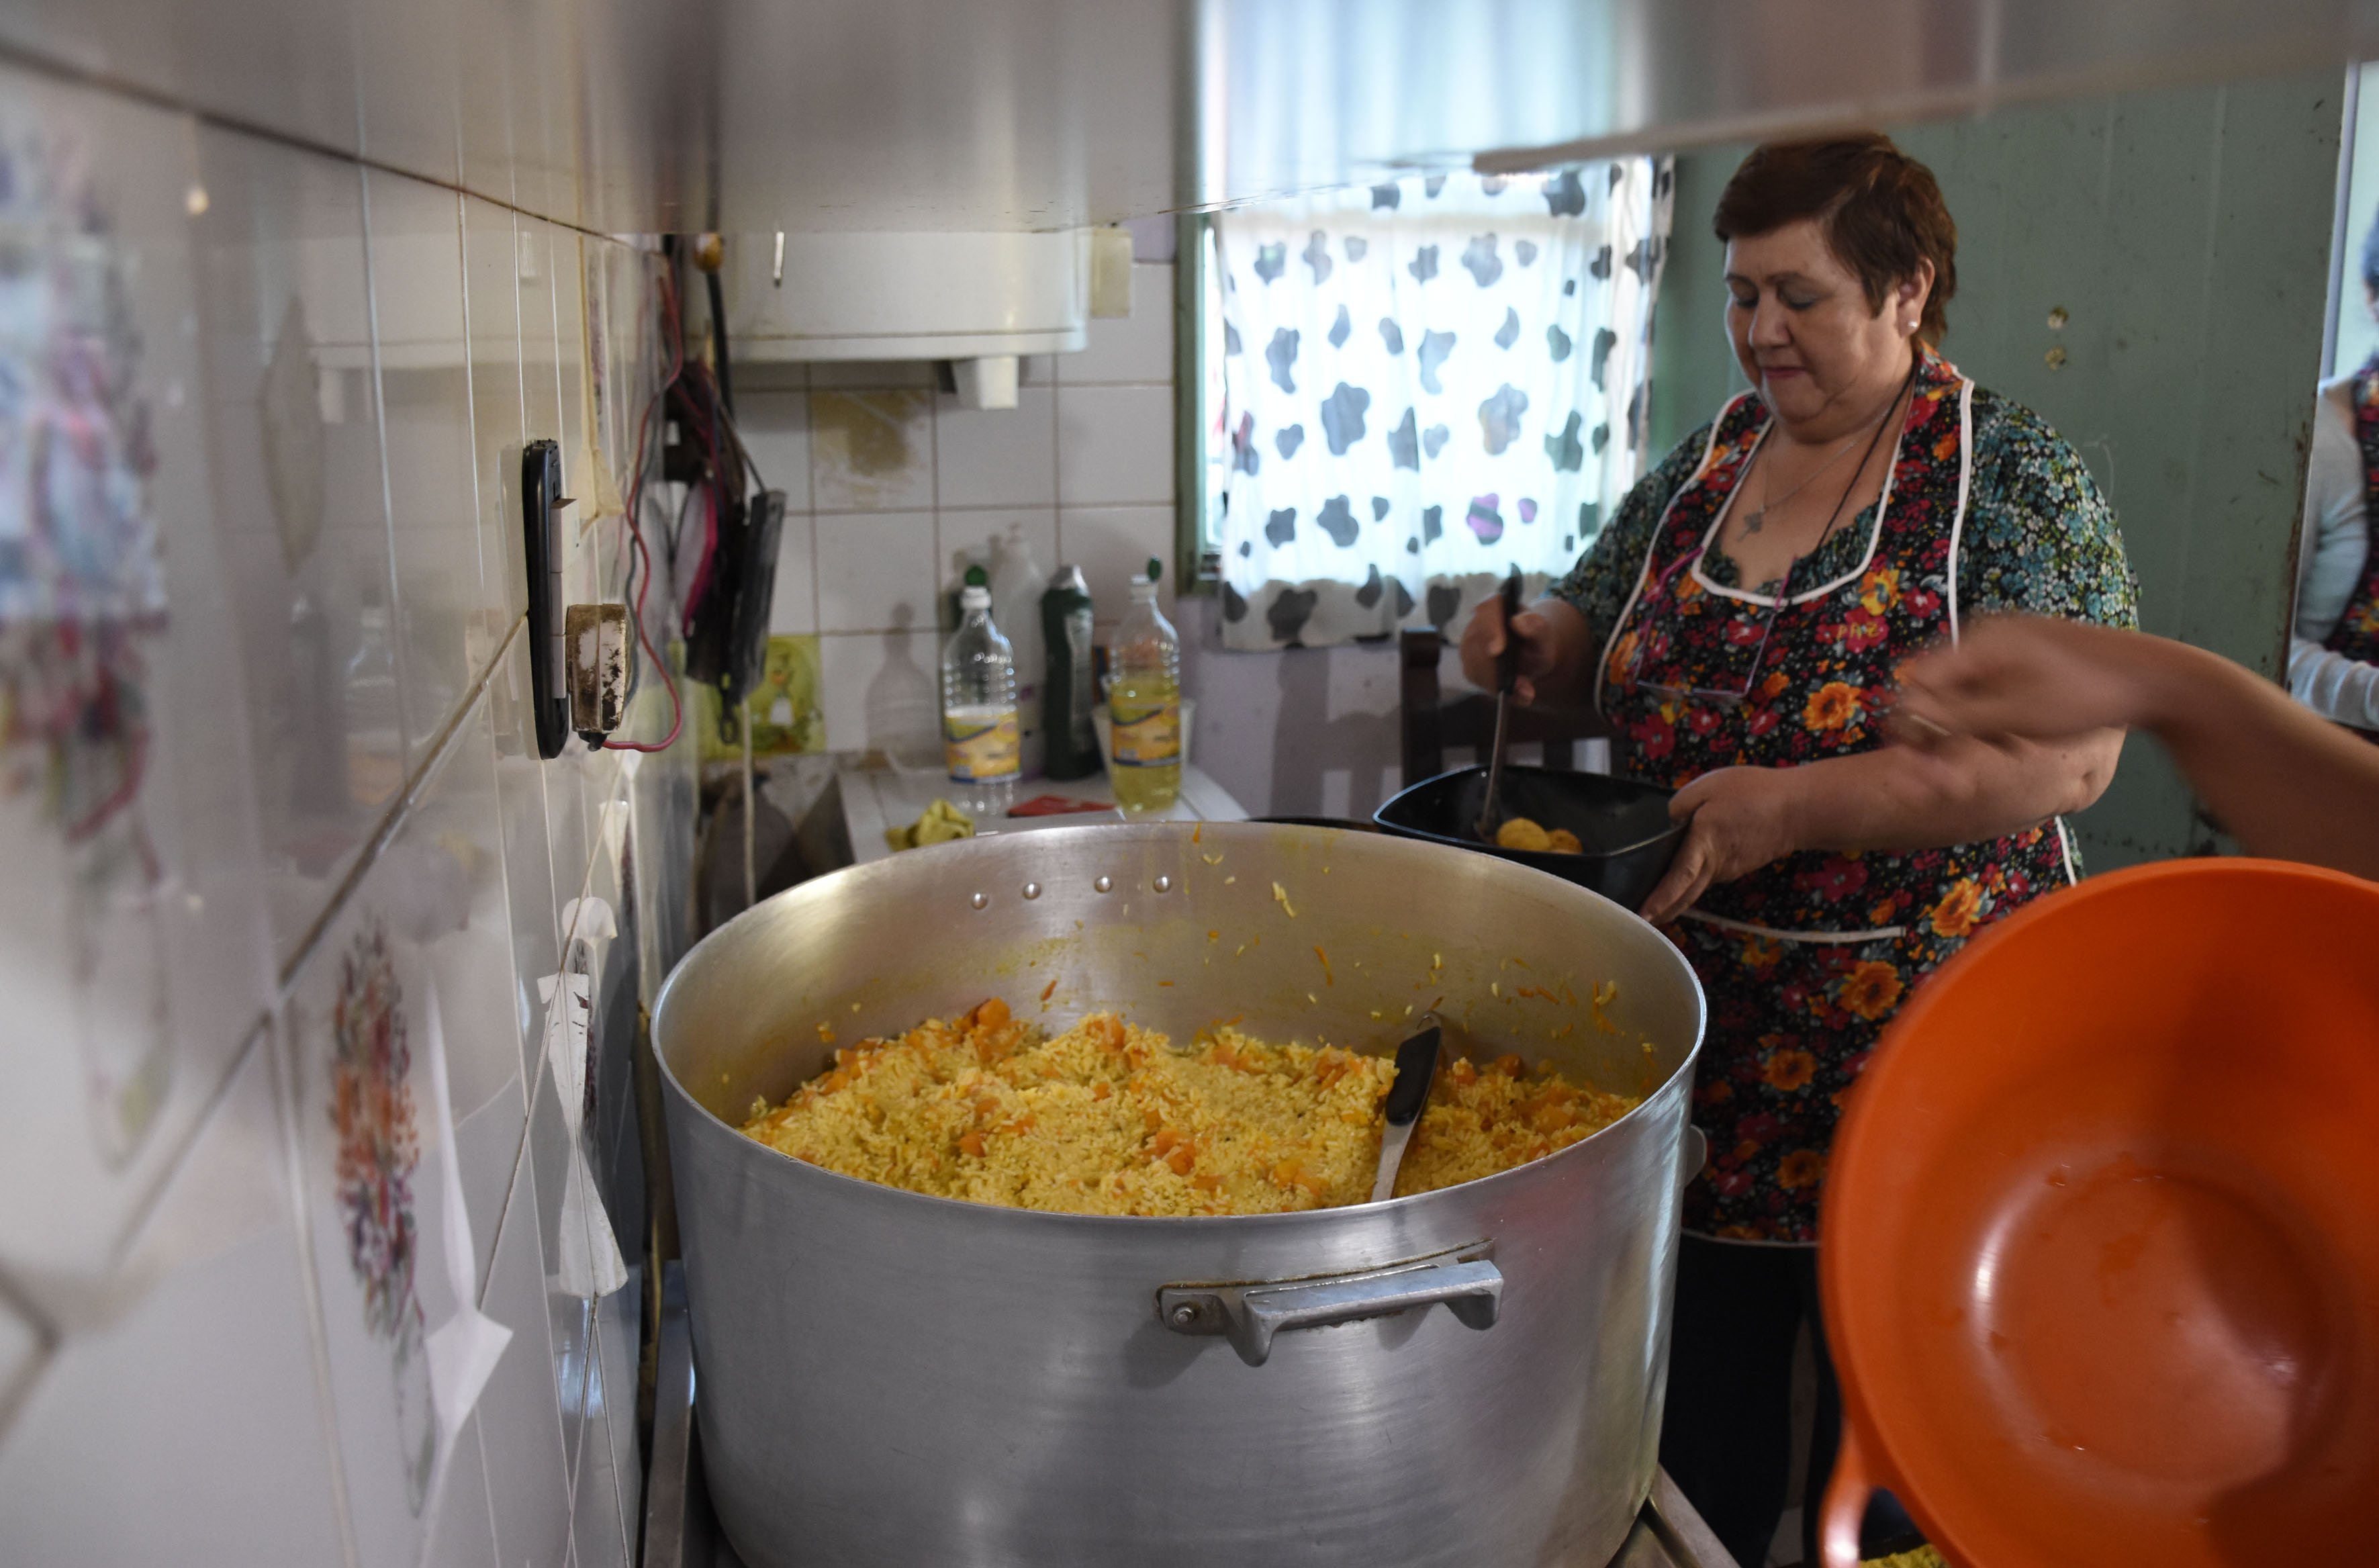 El trabajo en la cocina no tiene descanso ante el aumento de los pedidos por un plato. Foto: Florencia Salto